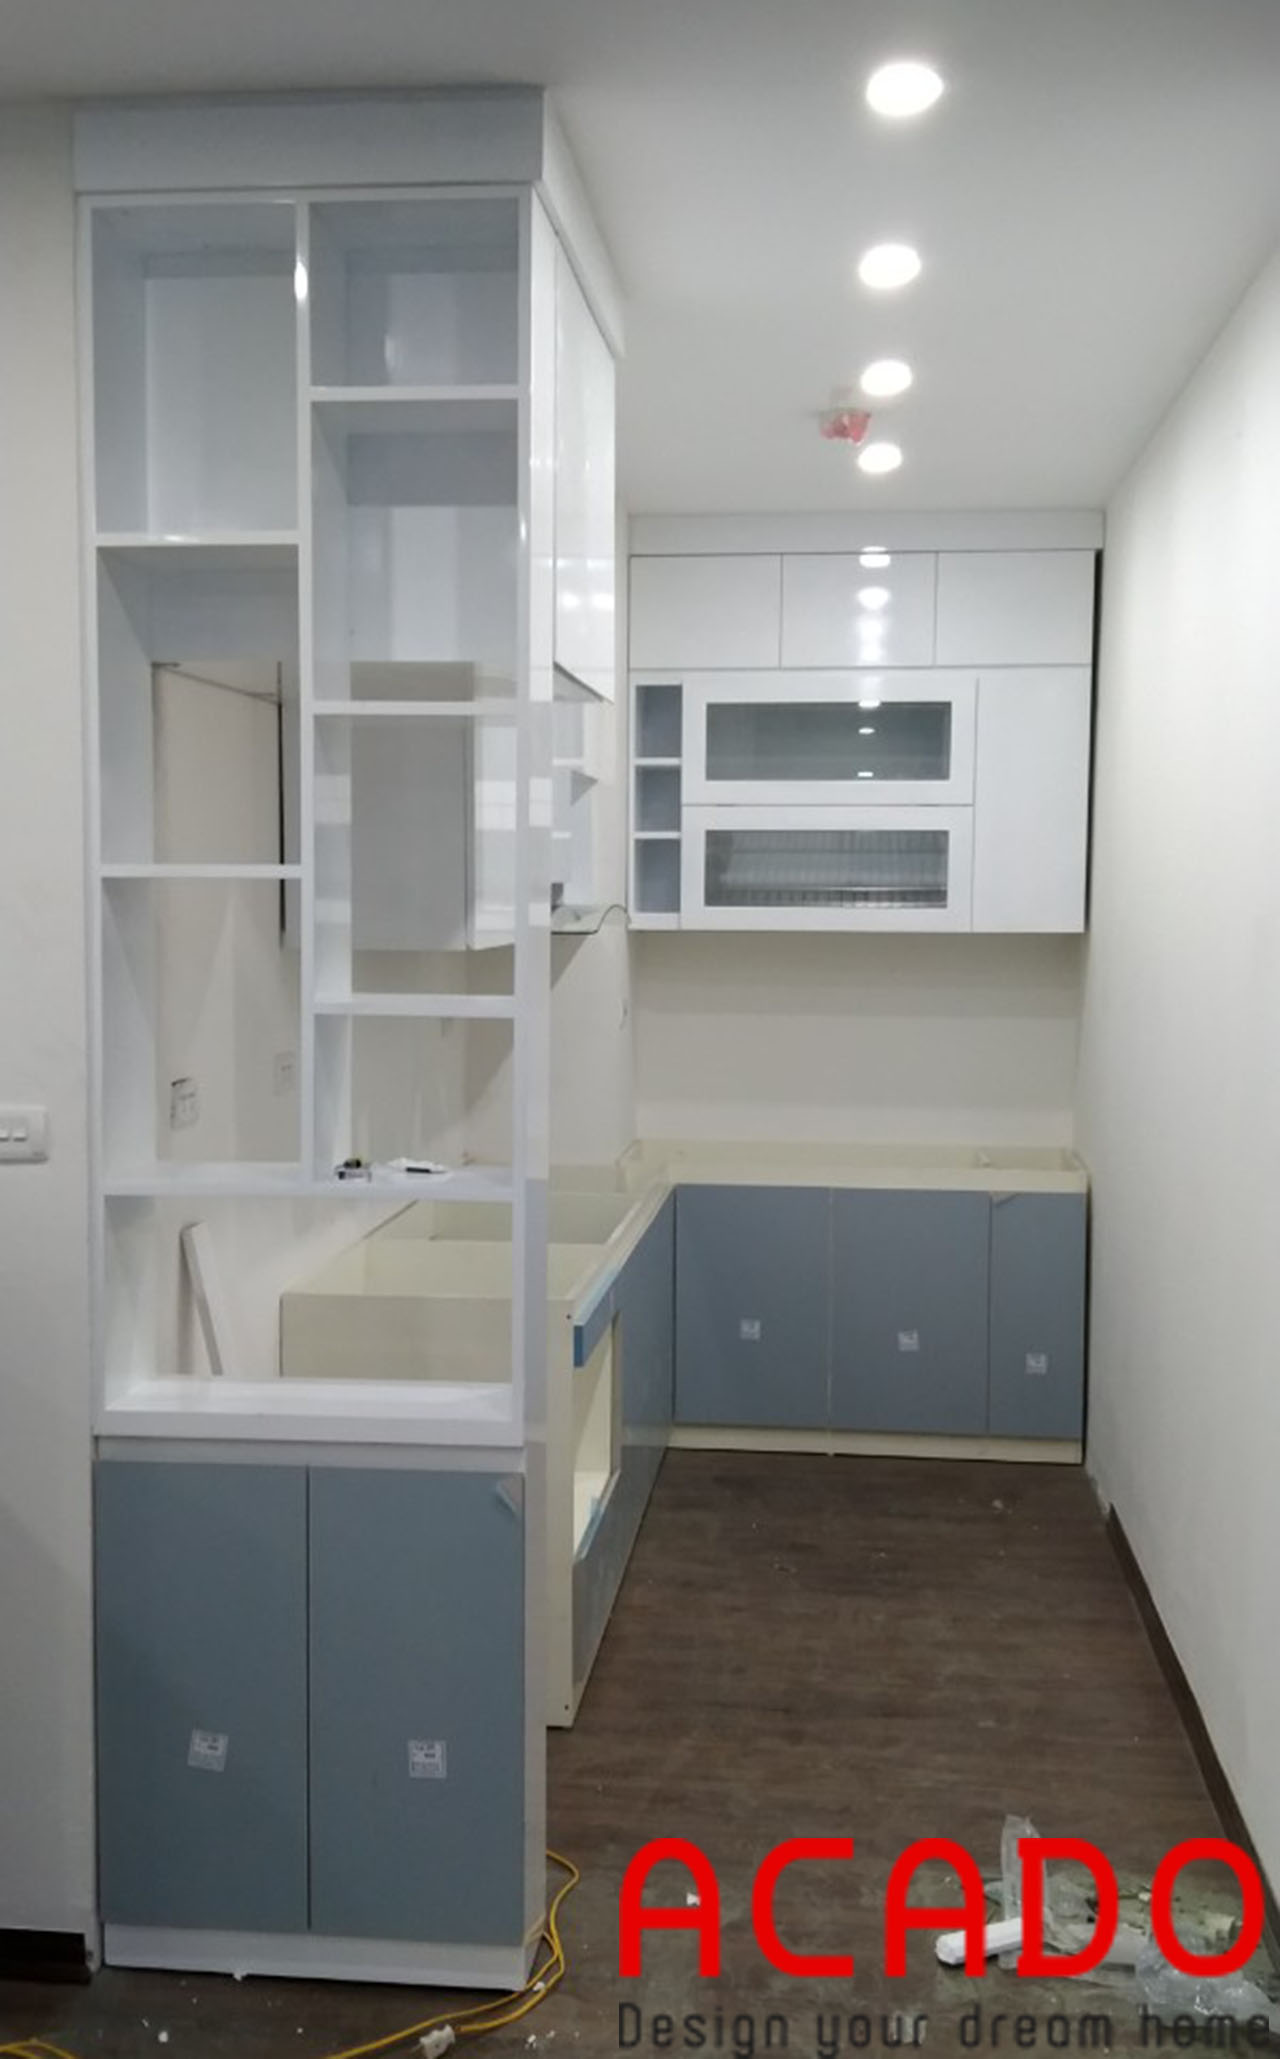 Tủ trên màu trắng kết hợp với tủ dưới màu xanh lam mang đến sự nhẹ nhàng, tinh tế cho không gian bếp - Lắp đặt tủ bếp tại Kiến Hưng